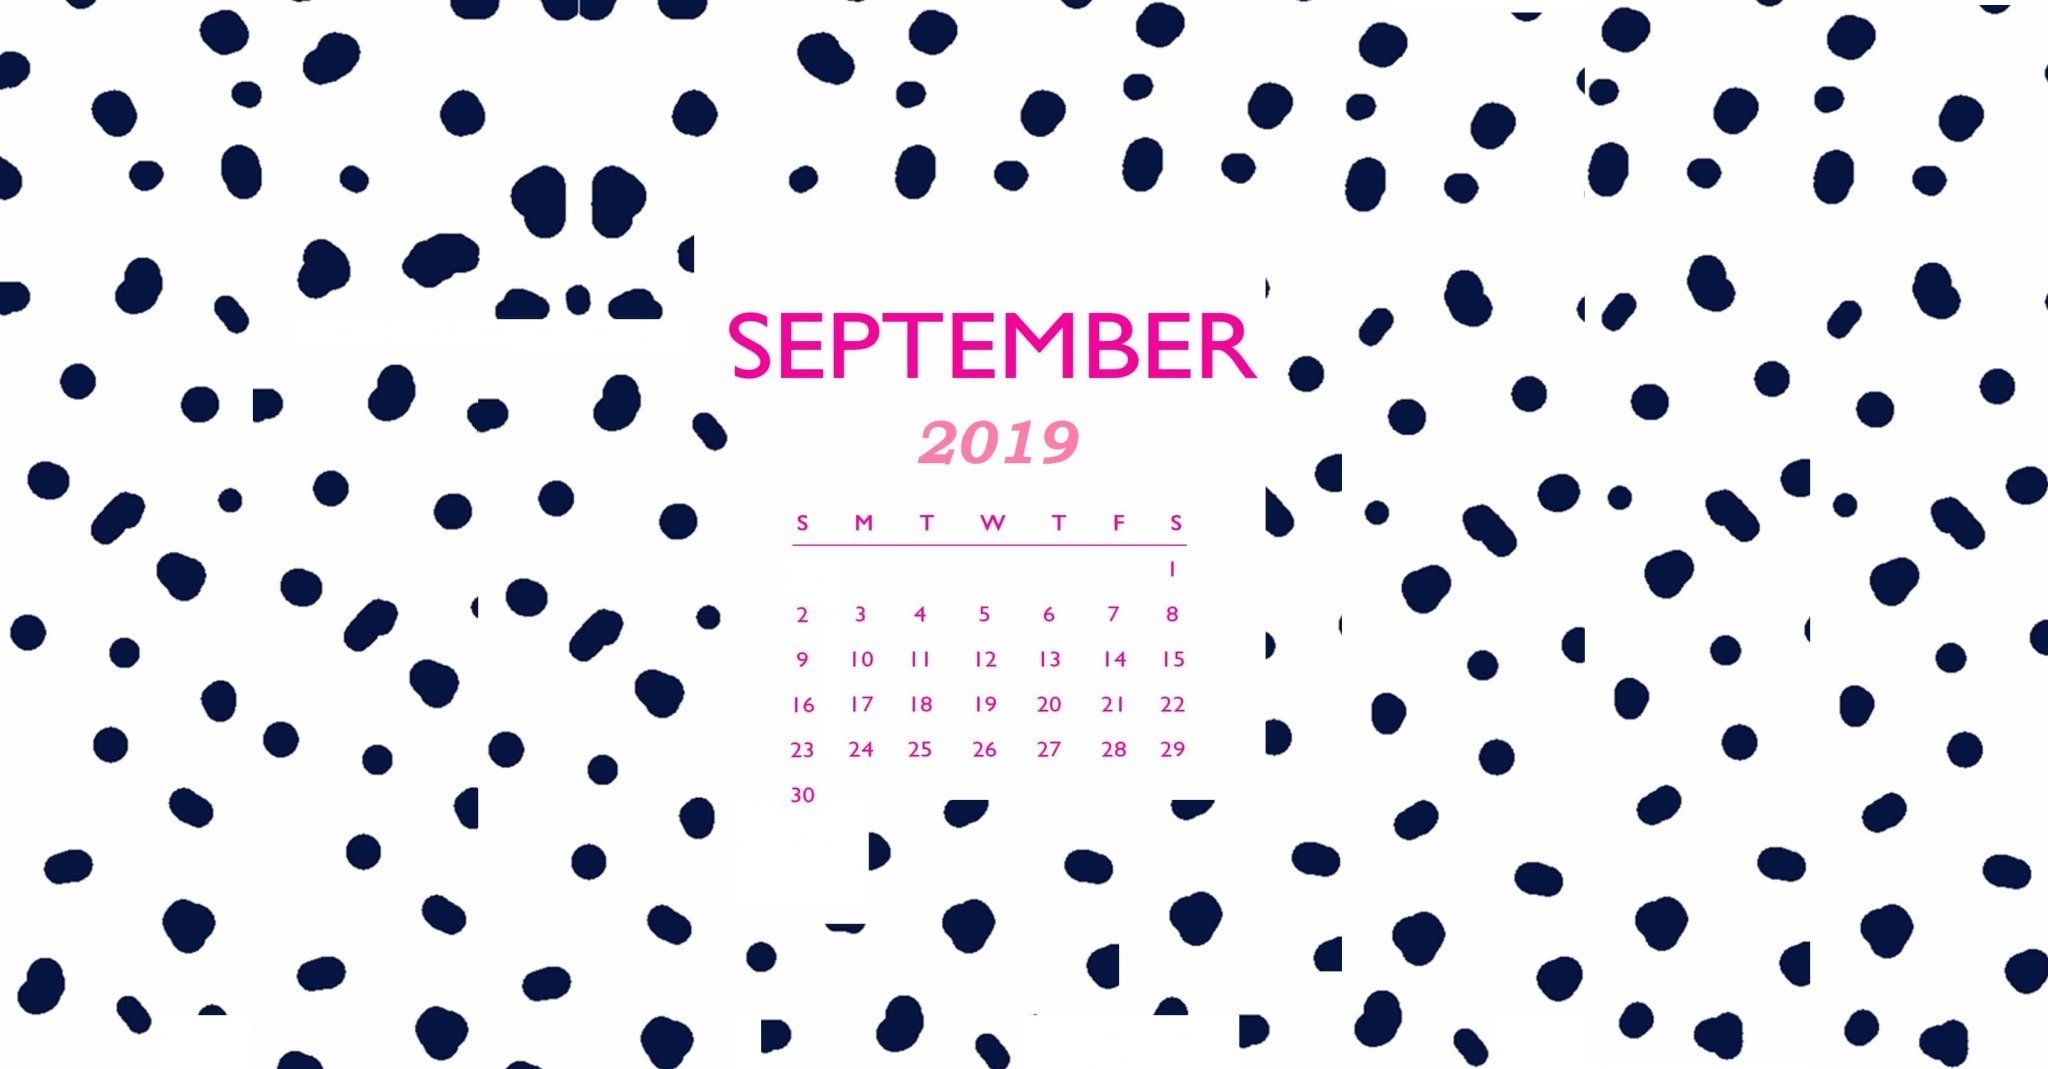 Desktop Calendar Wallpaper For September - September 2019 Calendar Background - HD Wallpaper 